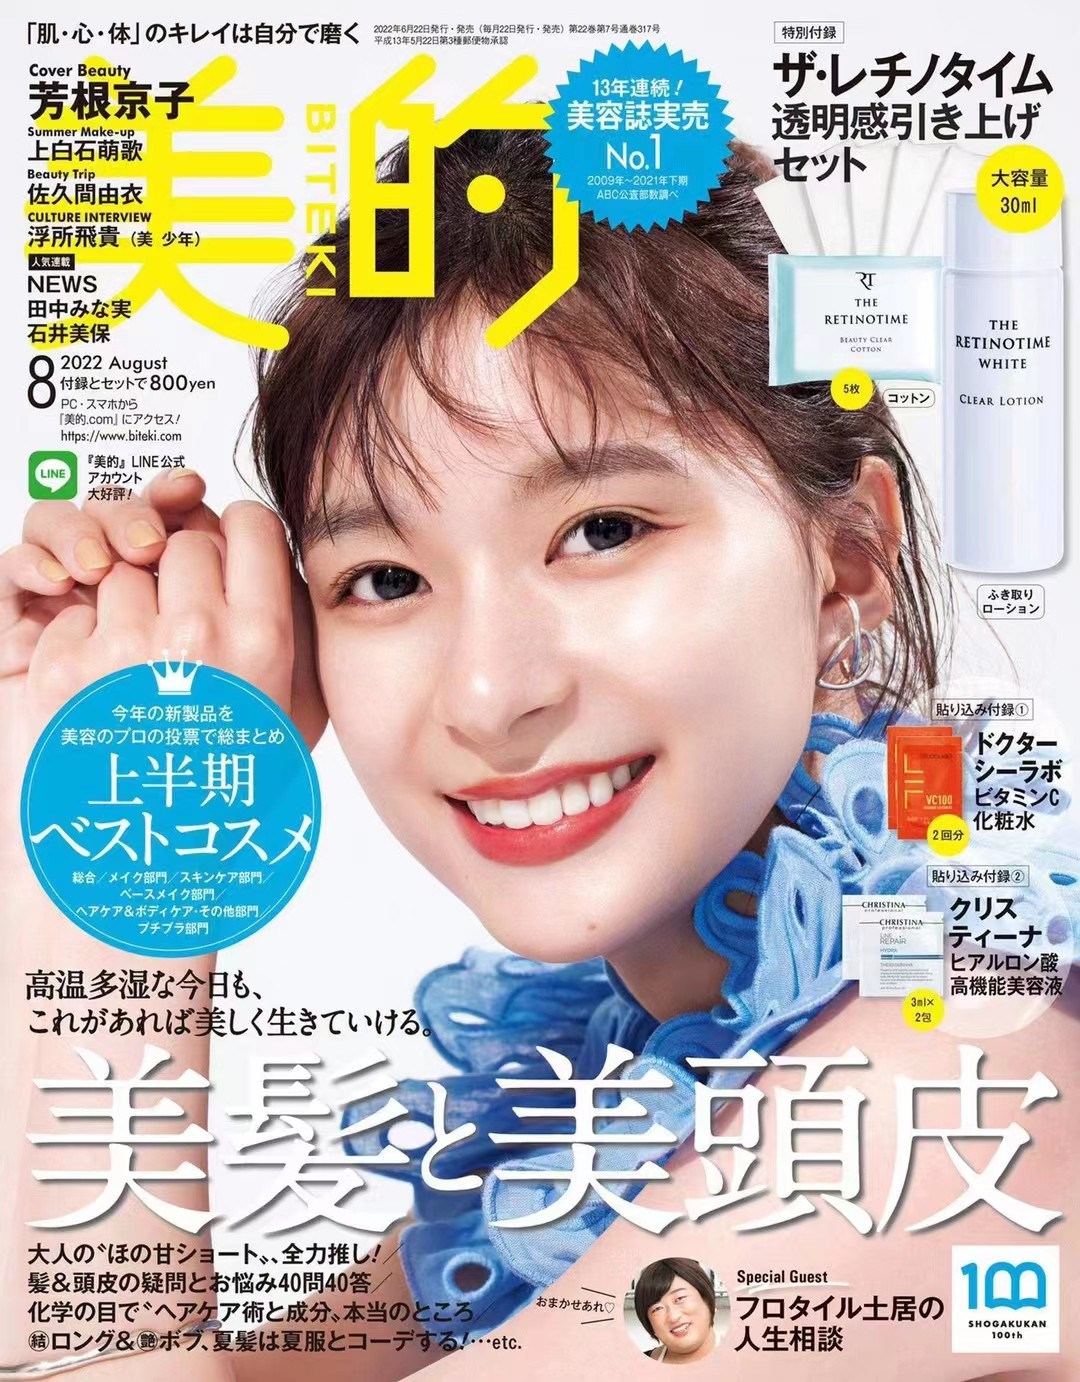 日本 004 美的 2022年8月 日本时尚潮流女性美容护肤化妆穿搭杂志、「百度网盘下载」